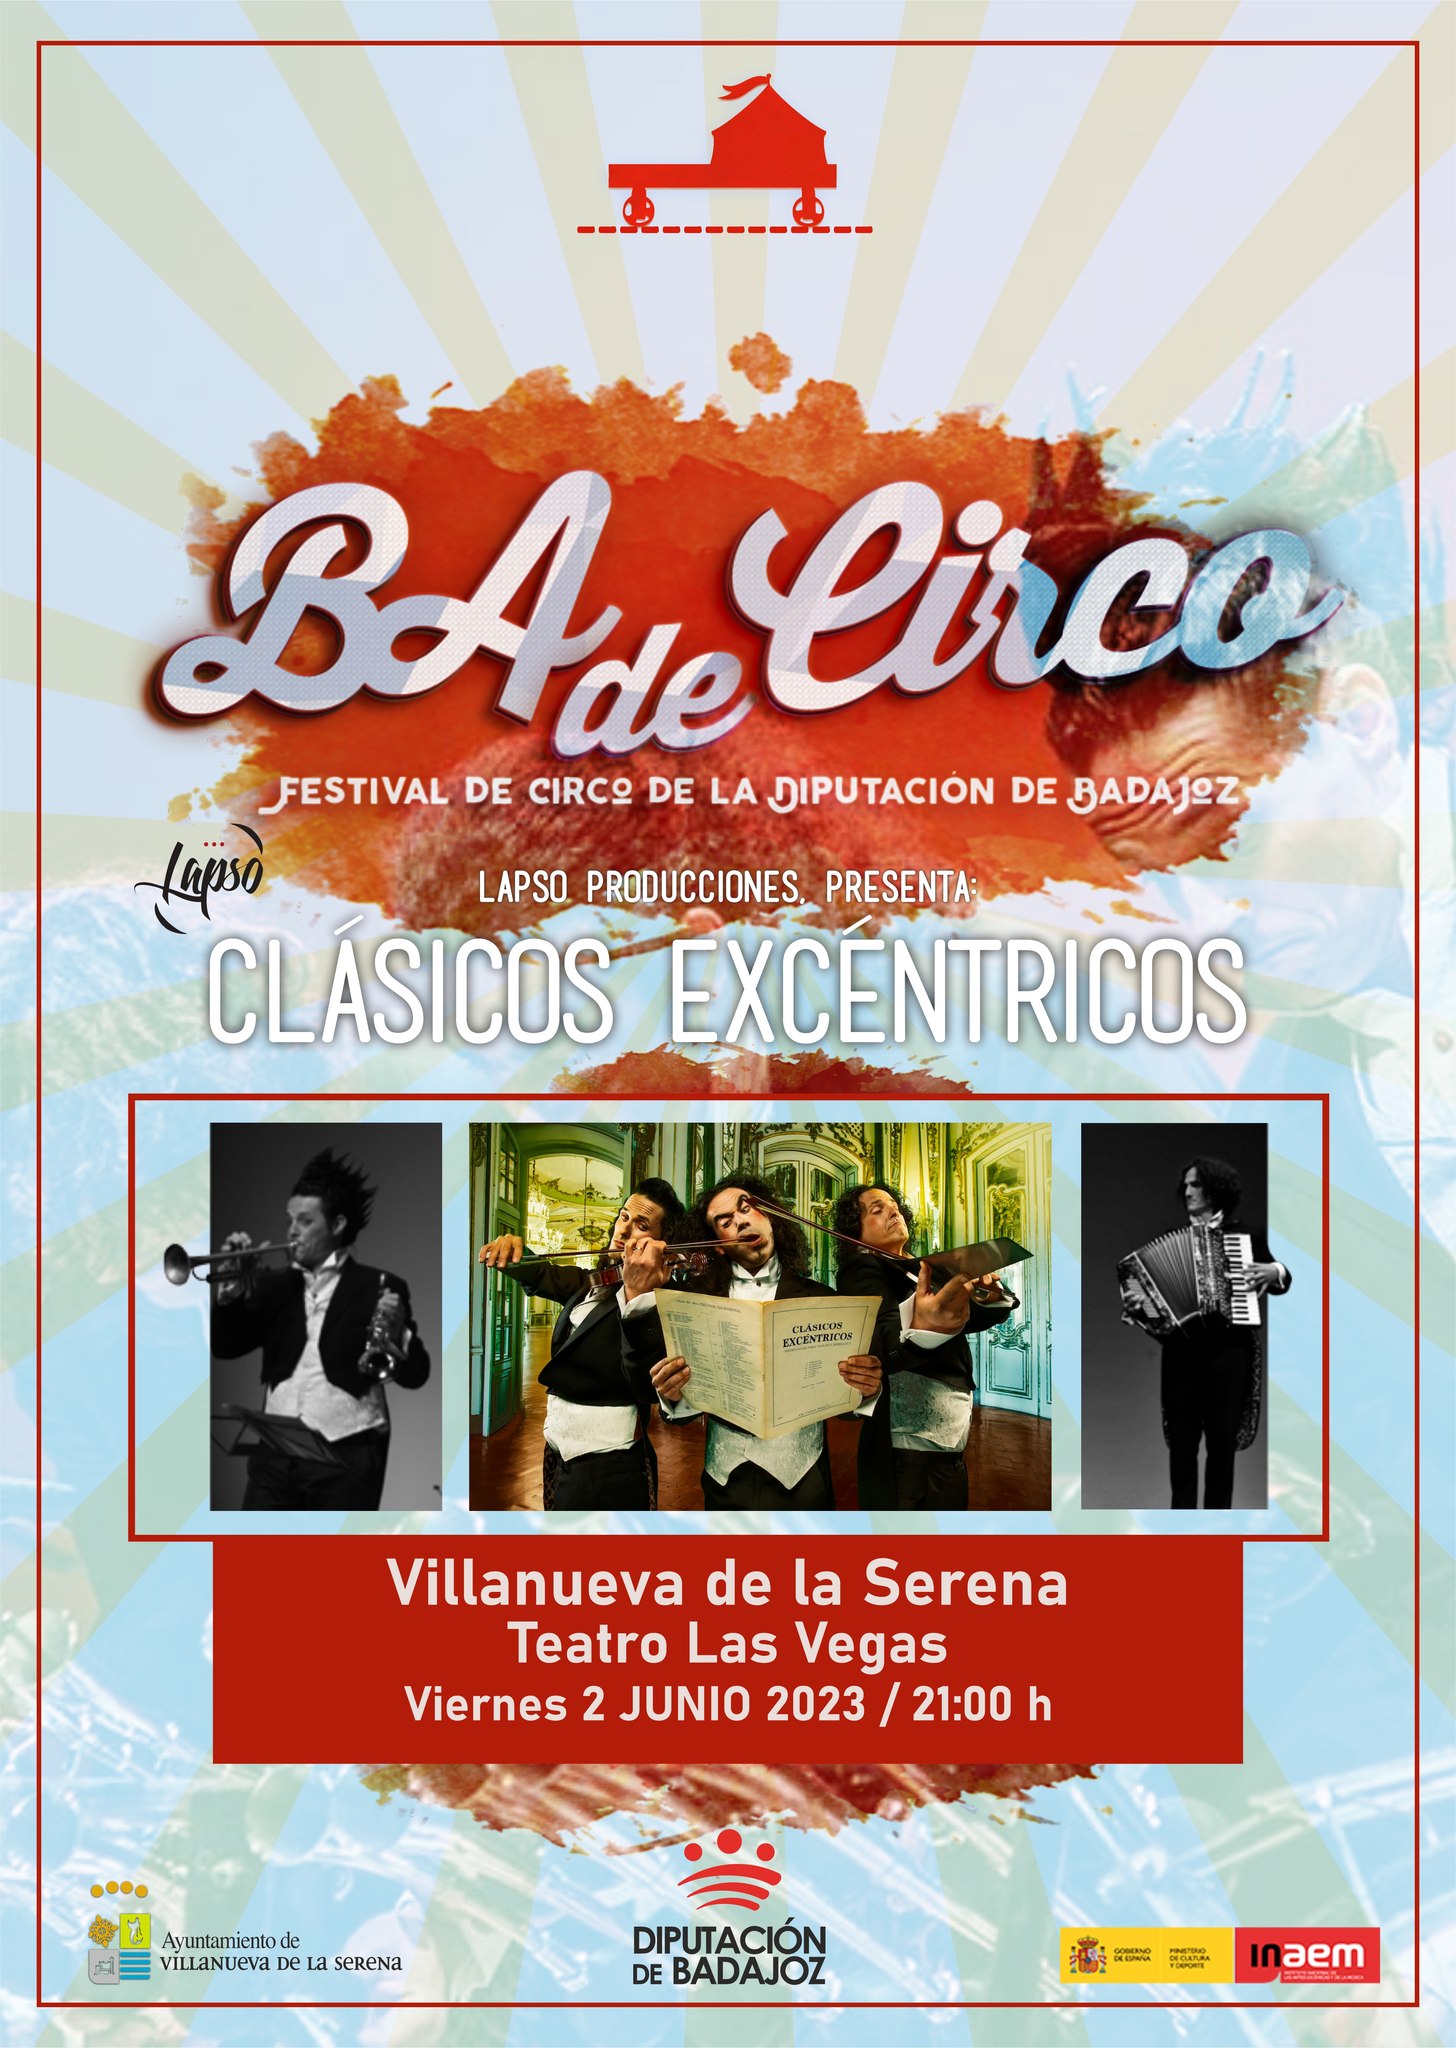 Ba de Circo. Festival de circo de la diputación de Badajoz 'Clásicos excéntricos'